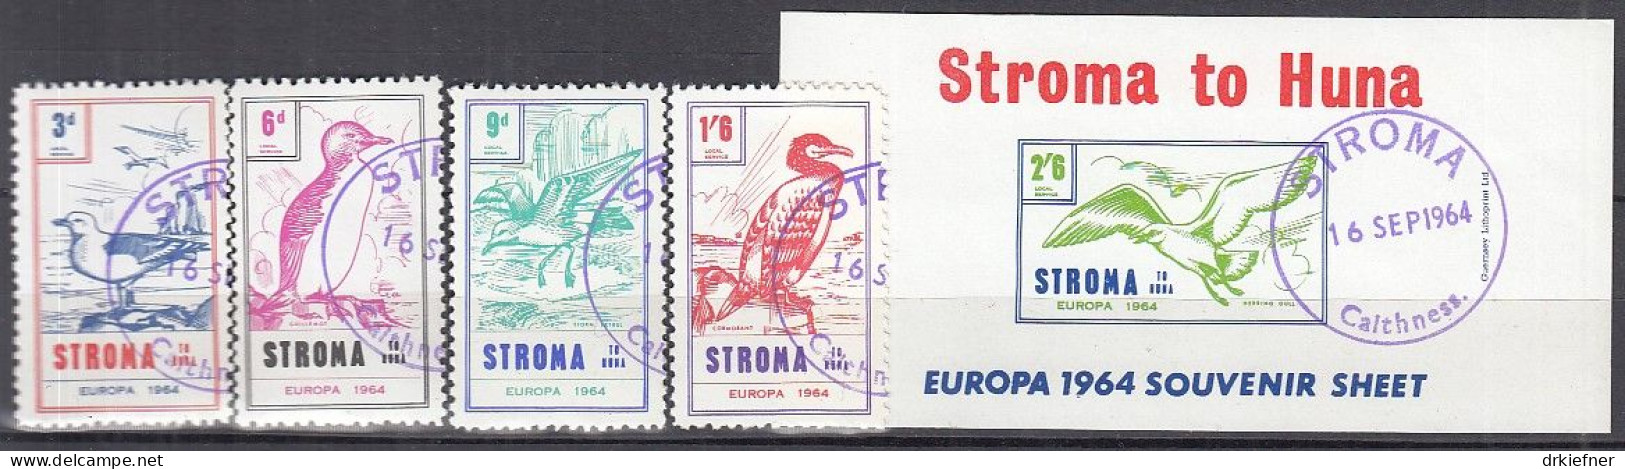 INSEL STROMA (Schottland), Nichtamtl. Briefmarken, Stroma To Huna, Block + 4 Marken, Gestempelt, Europa 1964, Vögel - Schottland